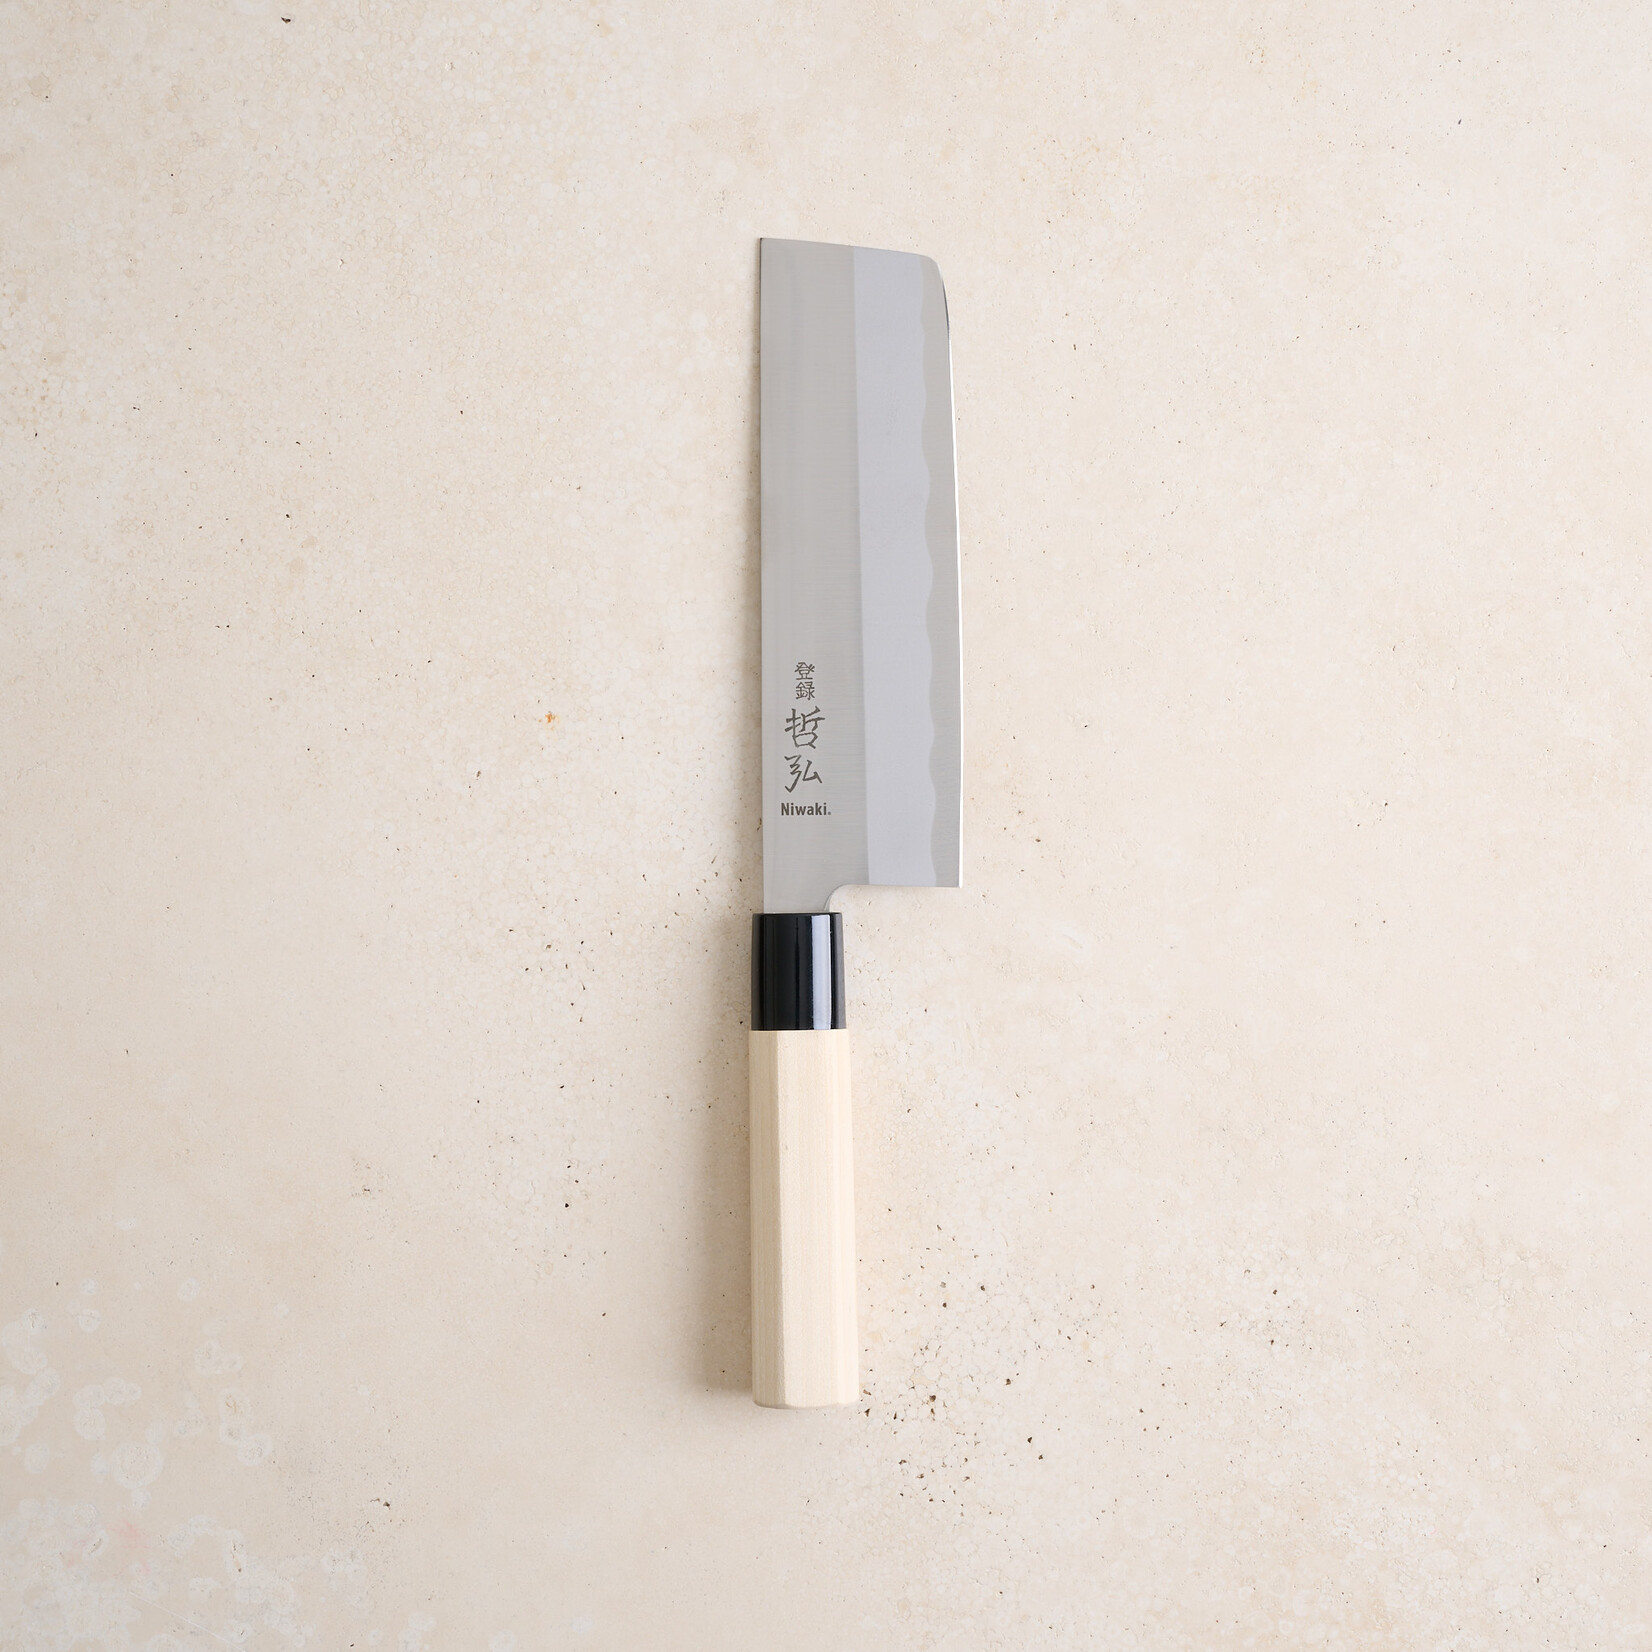 Japanese Style Stainless Steel Kitchen Knife - nakiri